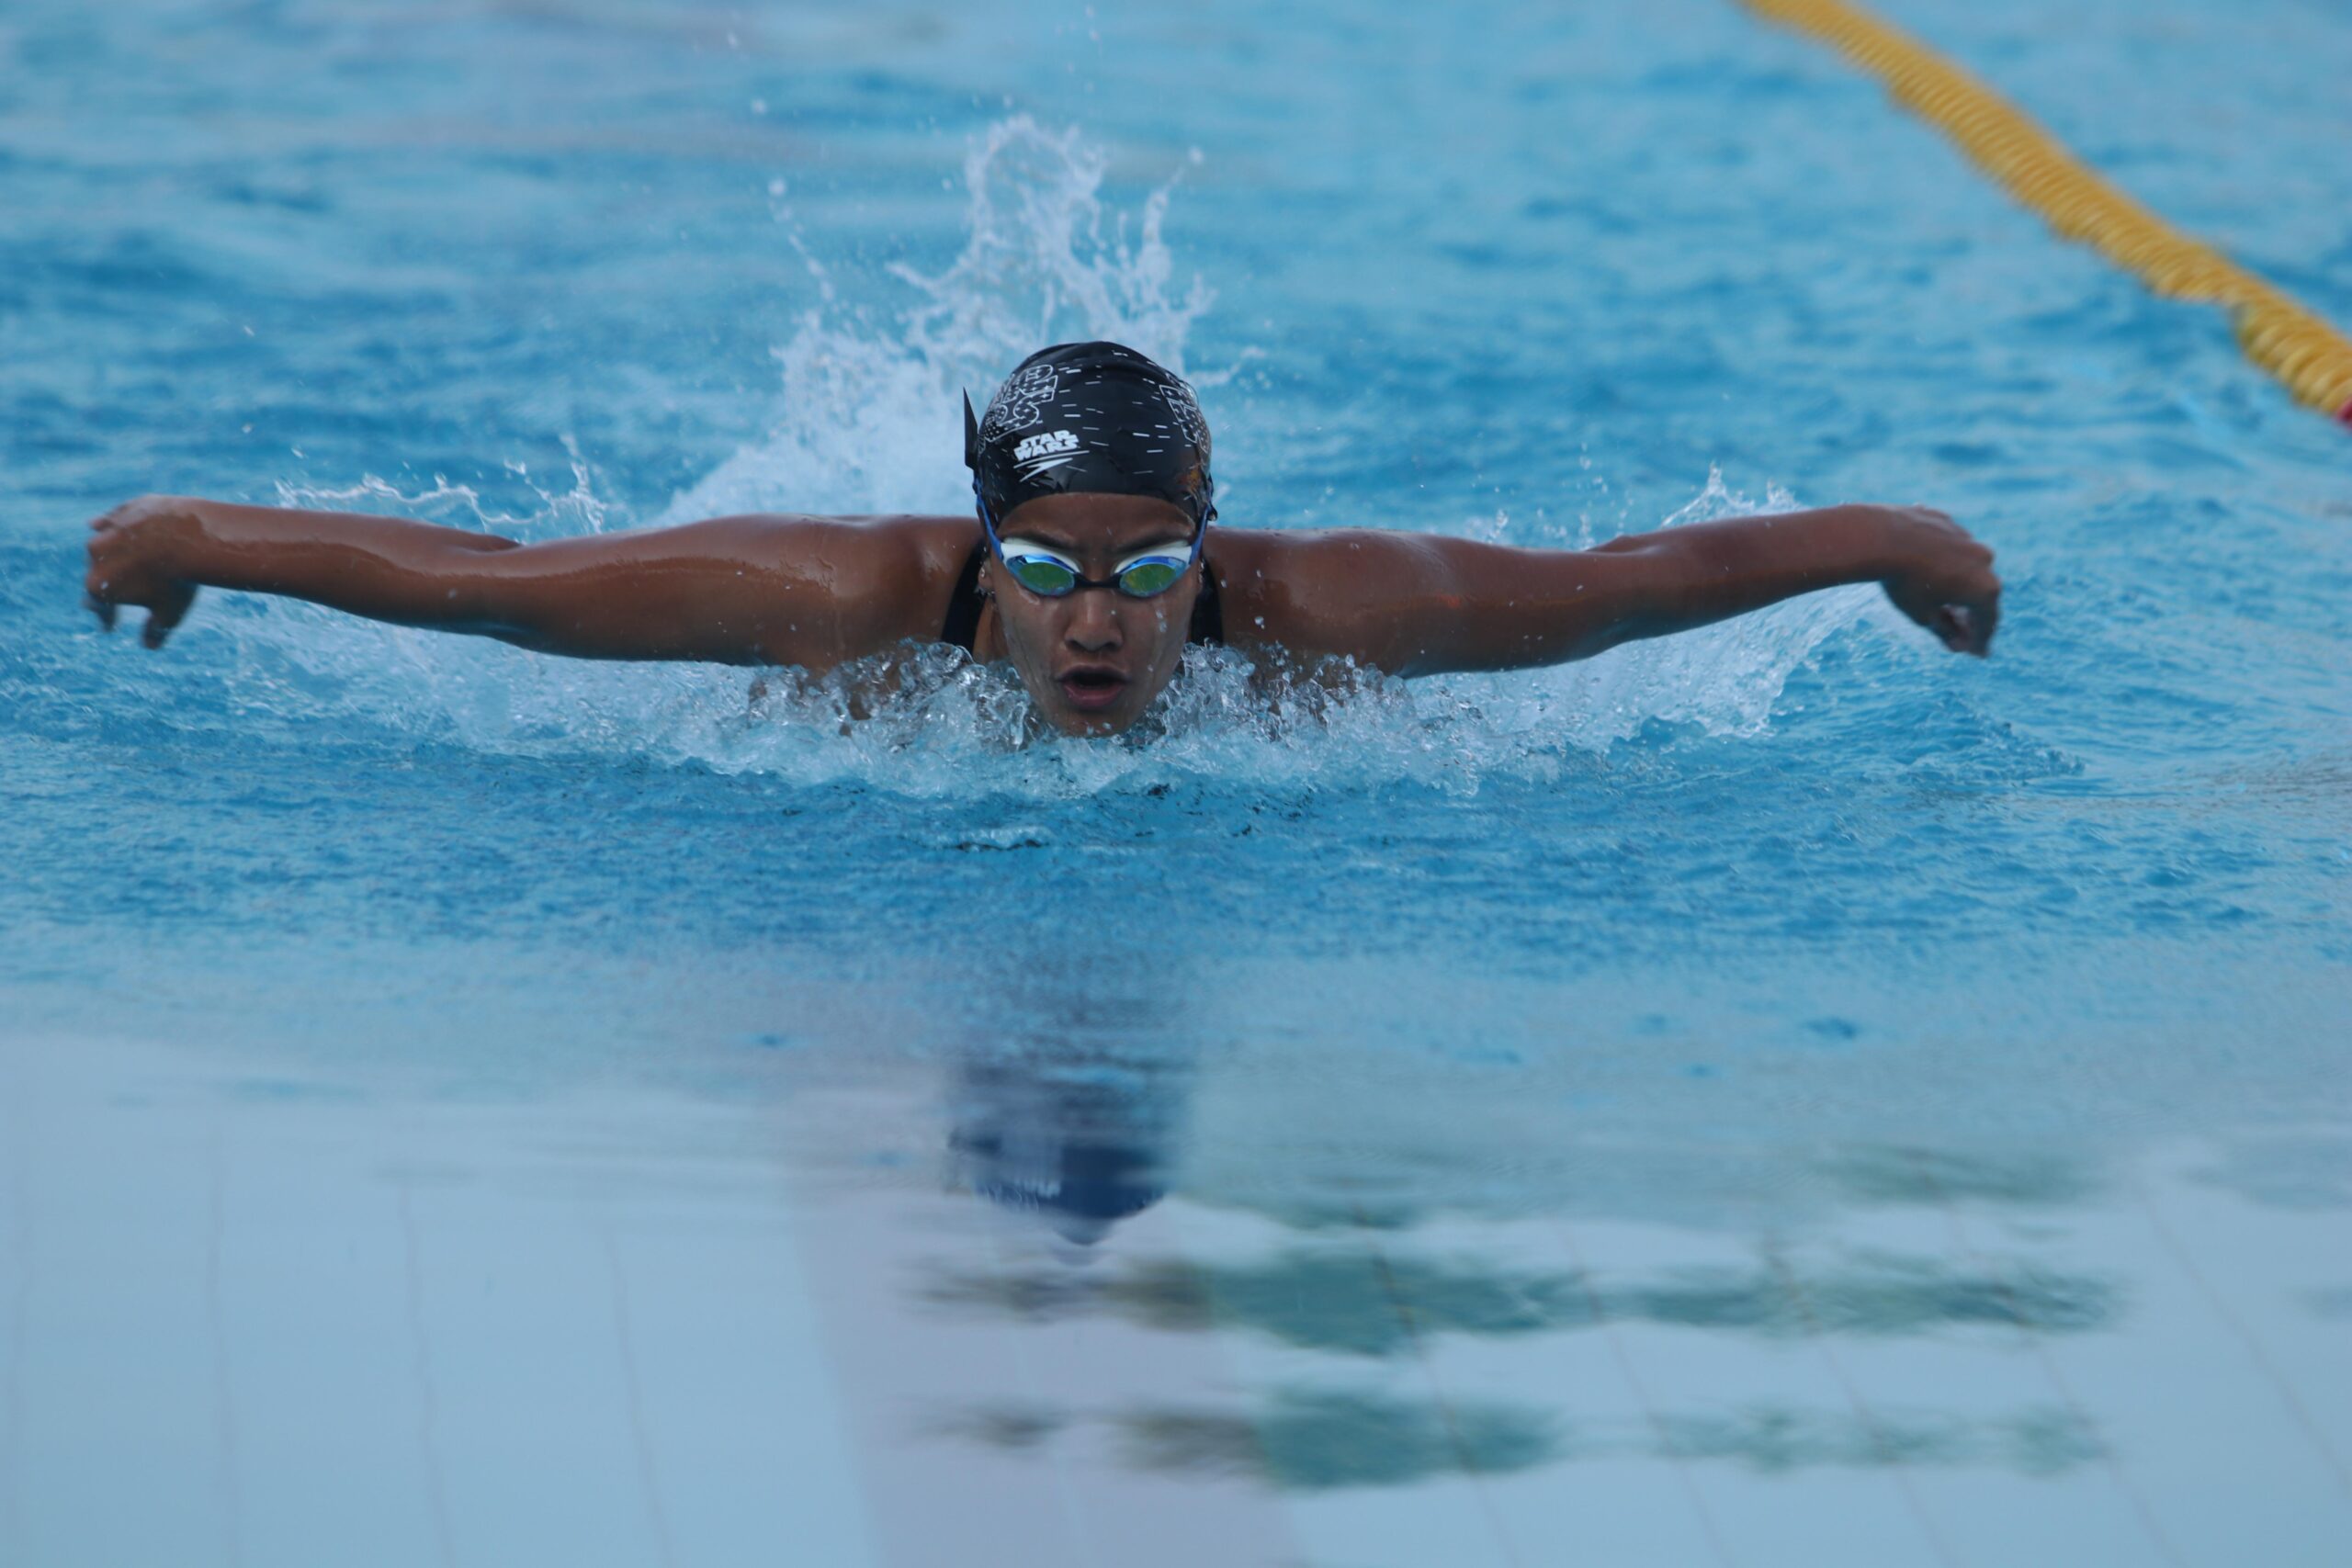 અમદાવાદની સ્વિમર માના પટેલ ટોક્યો ઓલિમ્પિક માટે ક્વોલિફાય કરનારી પ્રથમ ભારતીય મહિલા